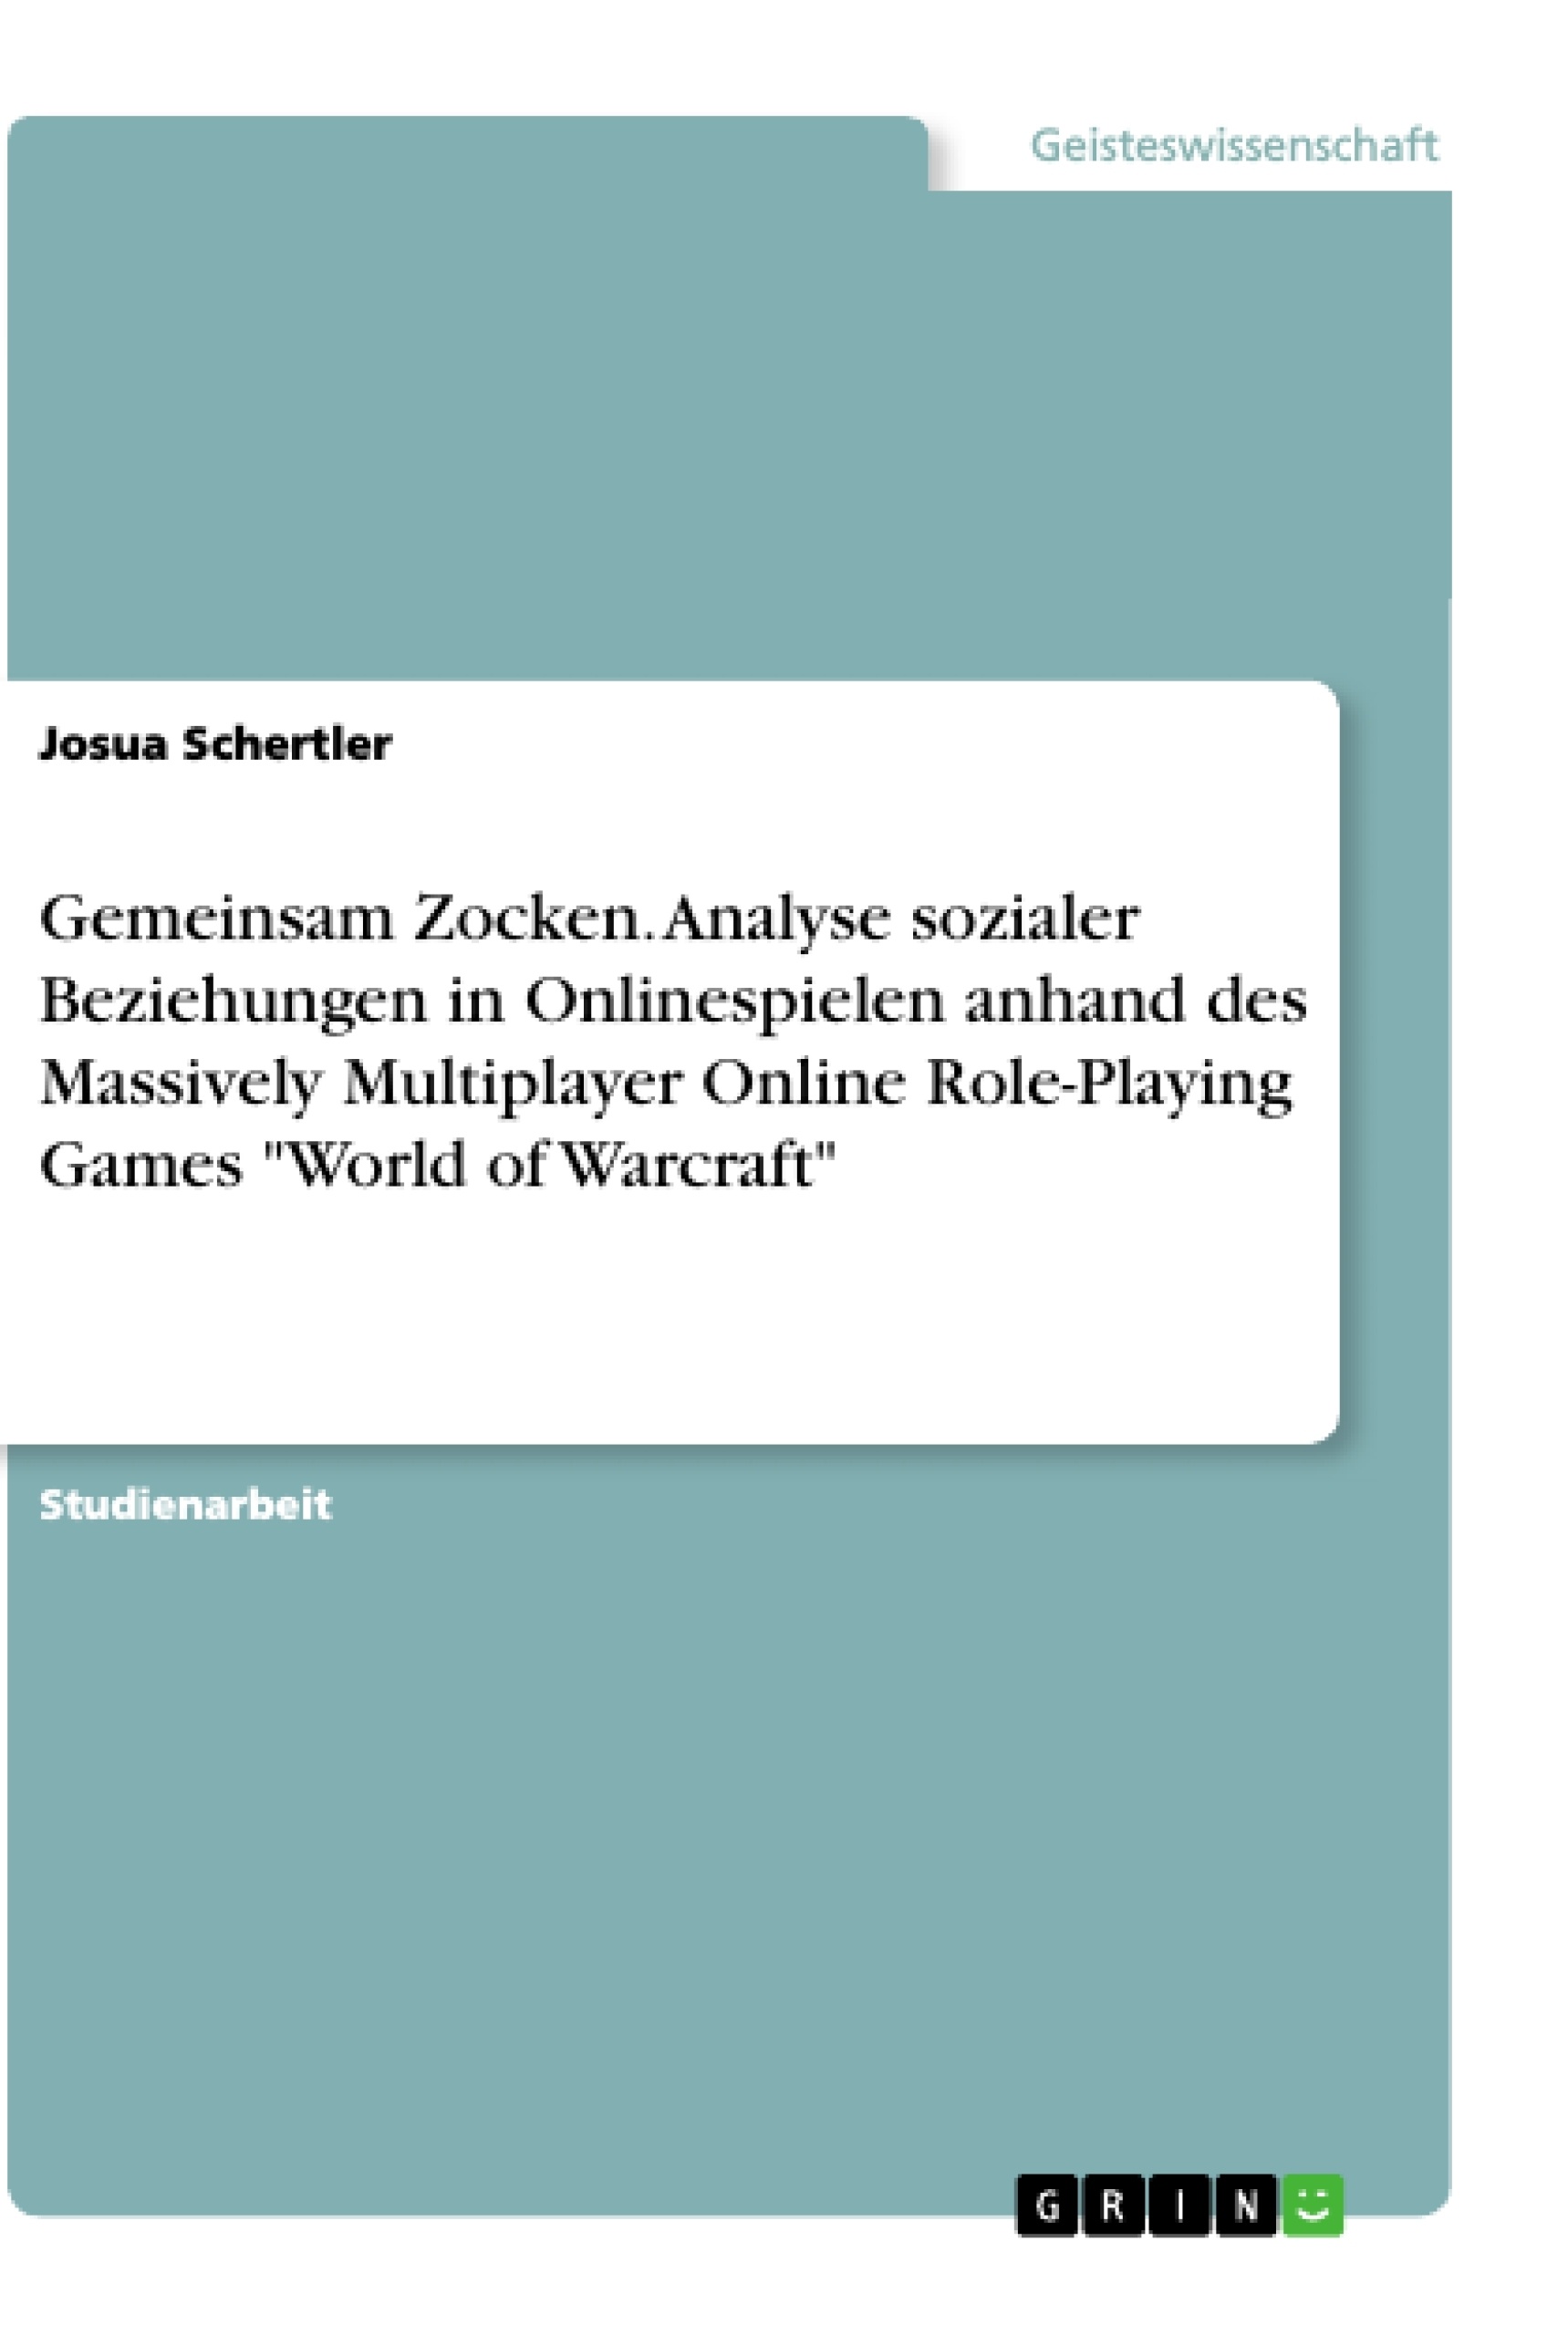 Titel: Gemeinsam Zocken. Analyse sozialer Beziehungen in Onlinespielen anhand des Massively Multiplayer Online Role-Playing Games "World of Warcraft"